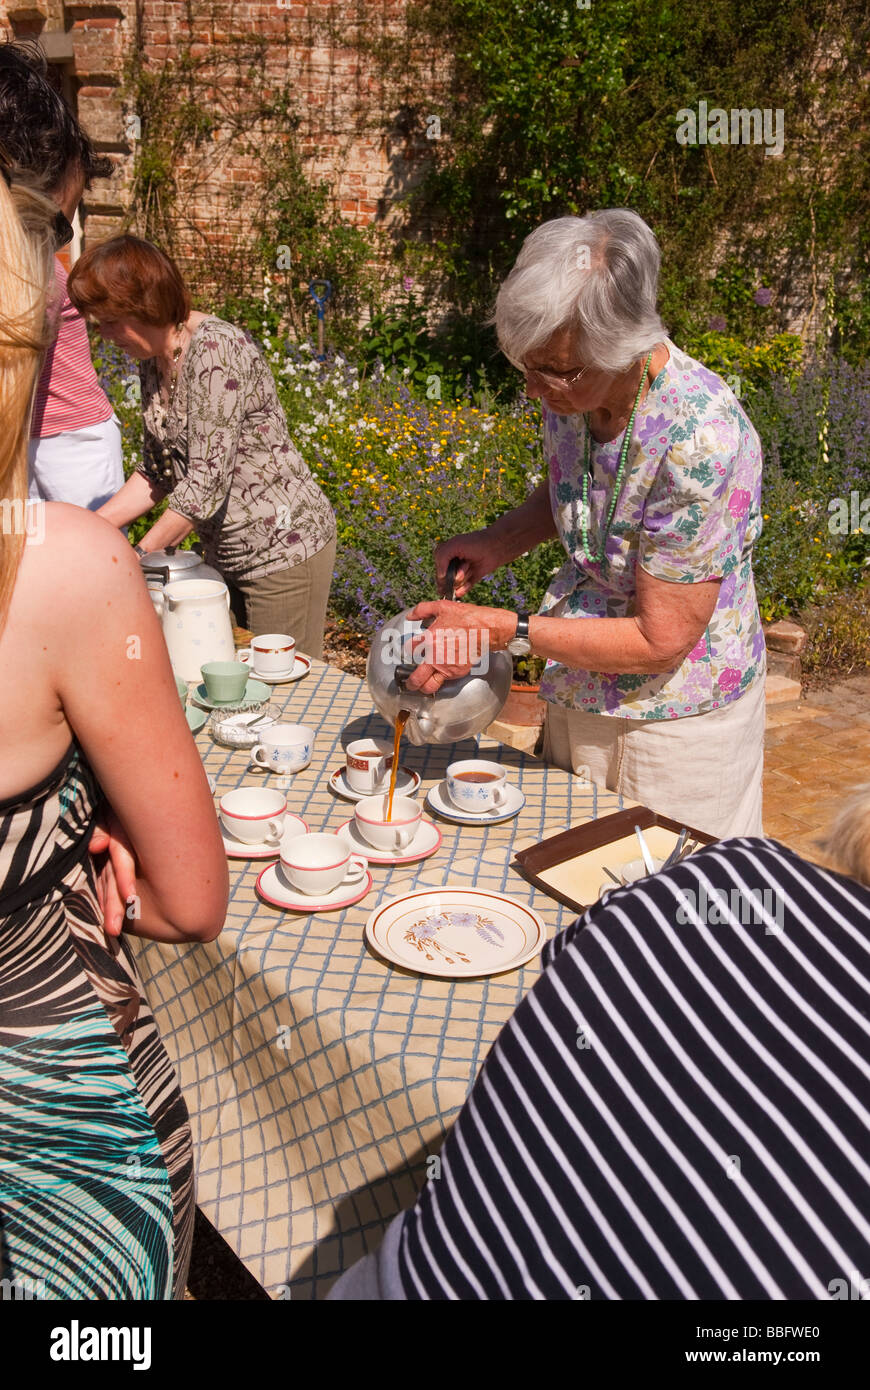 Les visiteurs ayant des rafraîchissements dans un jardin ouvert à un événement uk country house au printemps Banque D'Images